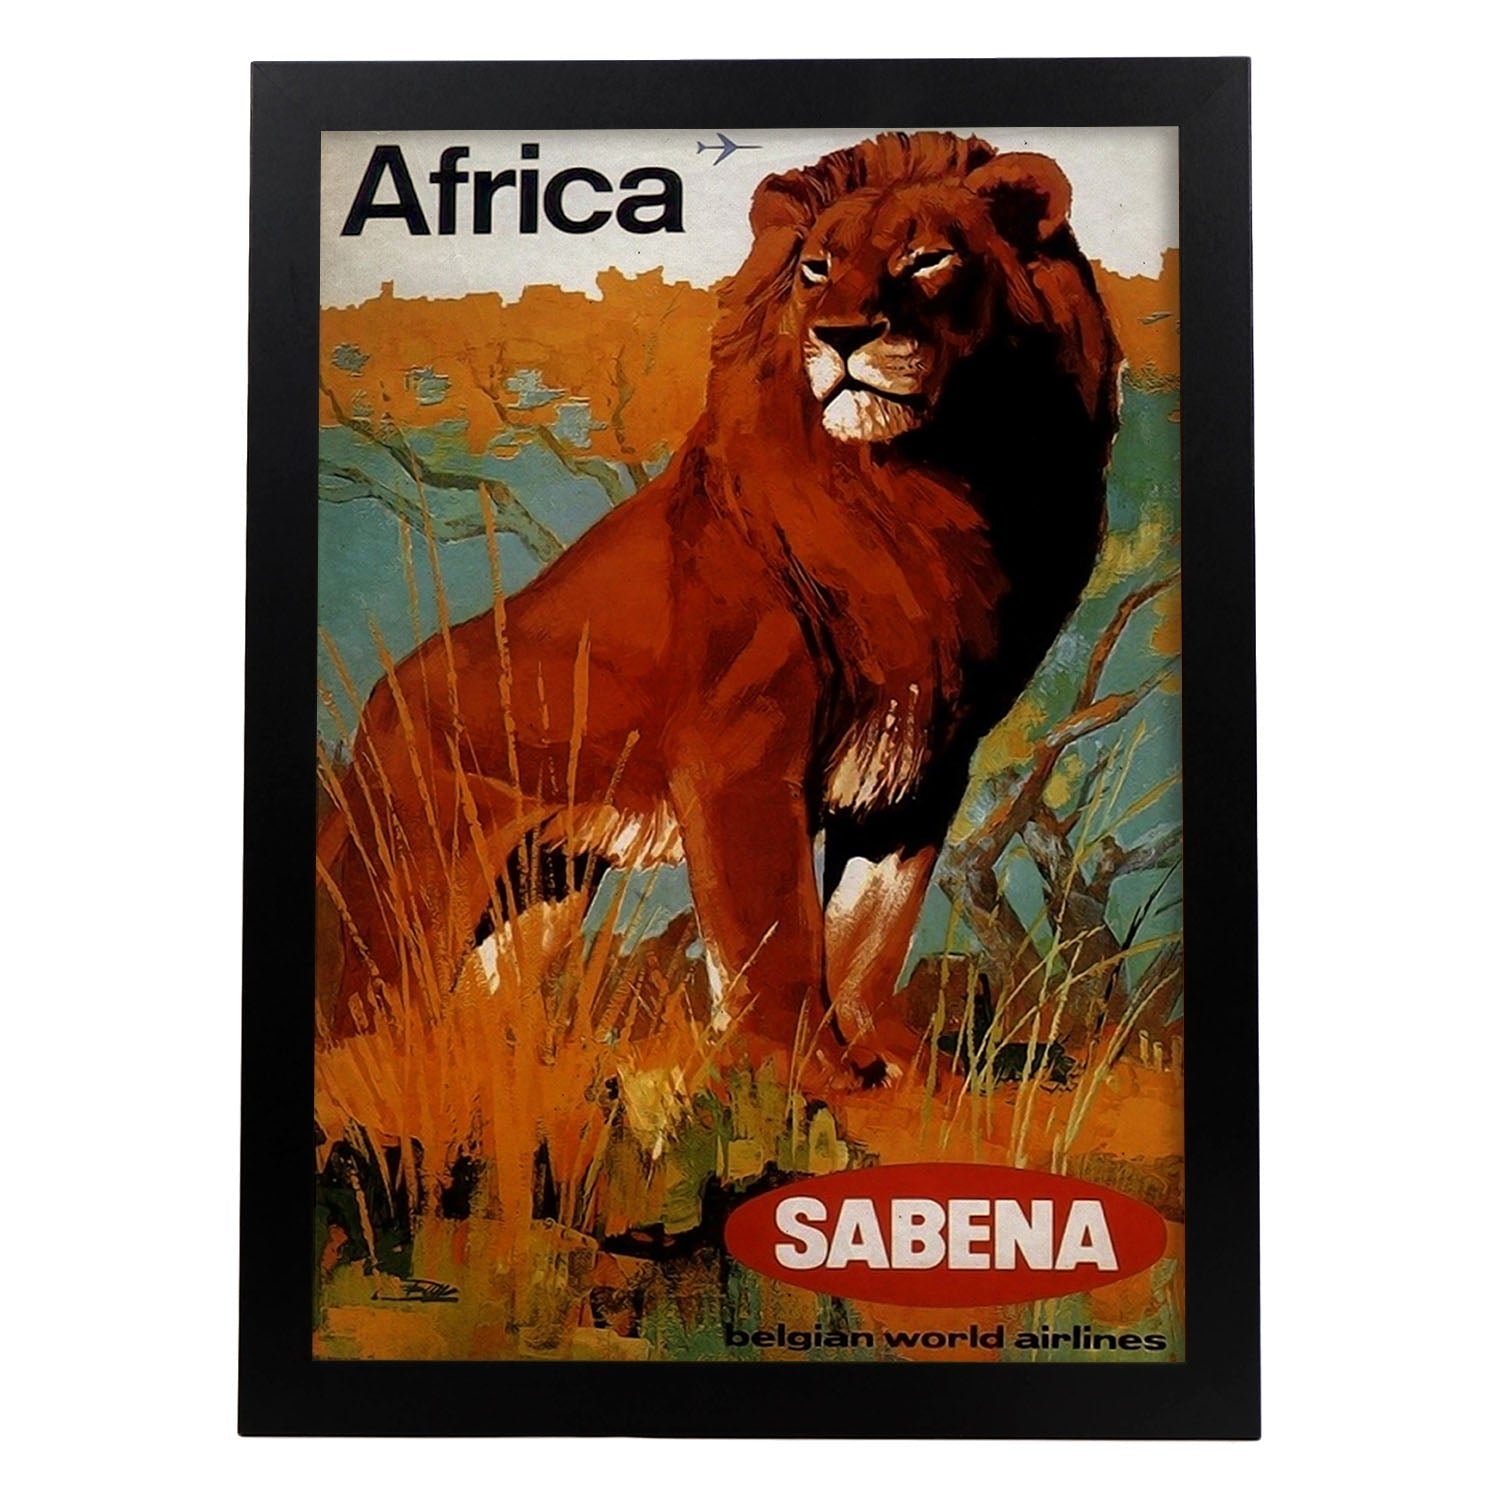 Poster vintage de Africa - Sabena. con imágenes vintage y de publicidad antigua.-Artwork-Nacnic-A4-Marco Negro-Nacnic Estudio SL